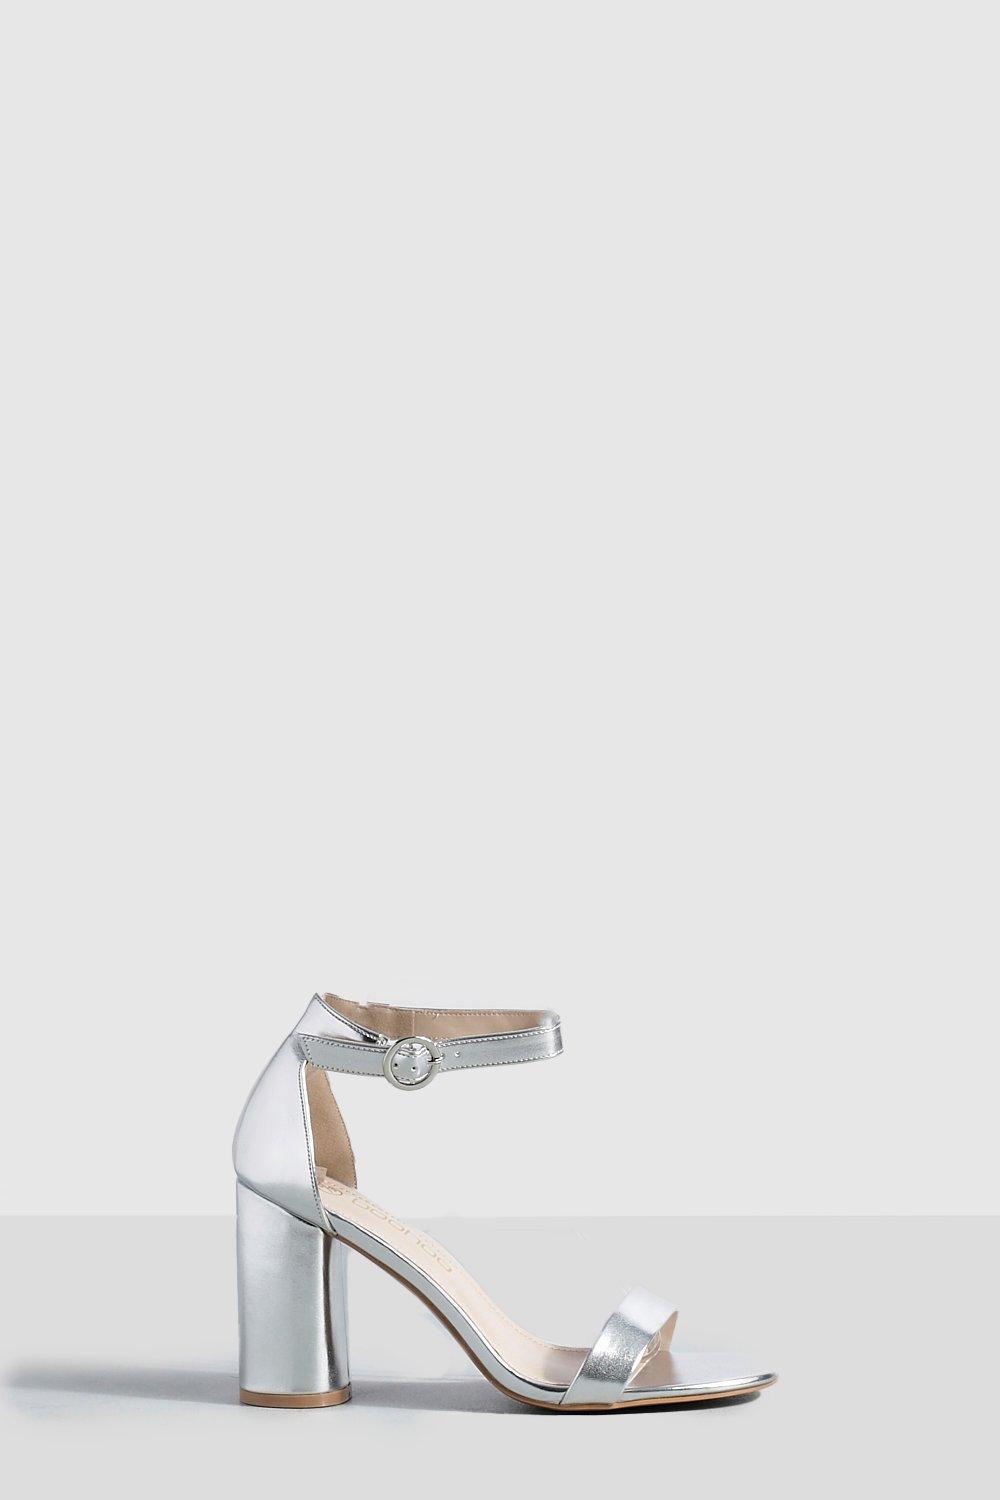 Image of Scarpe a calzata ampia in due parti effetto nudo con tacco arrotondato, Grigio